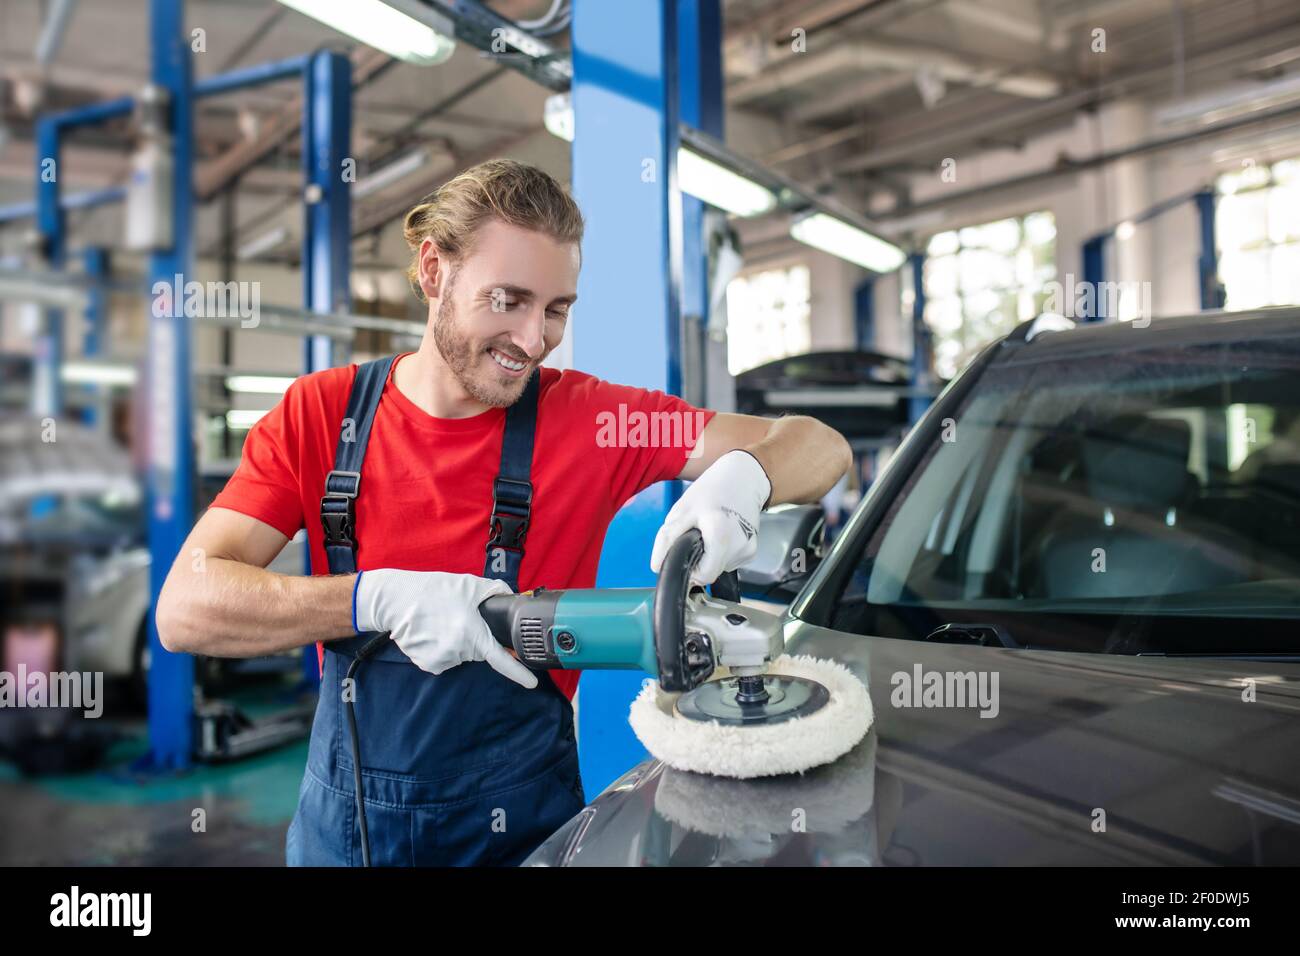 Happy man holding polishing machine on car surface Stock Photo